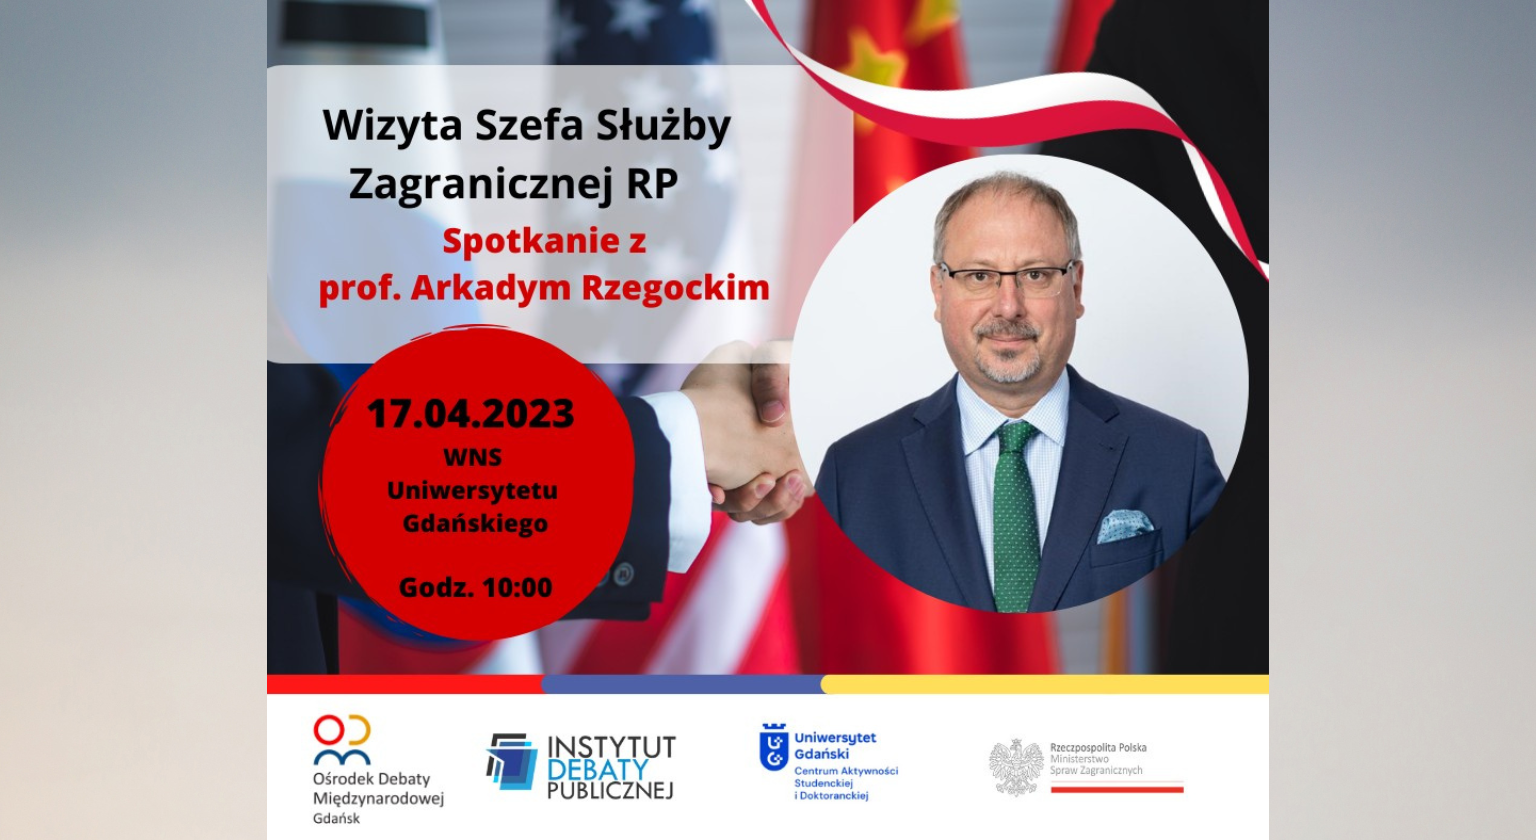 Spotkanie z Szefem Służby Zagranicznej RP prof. Arkadym Rzegockim